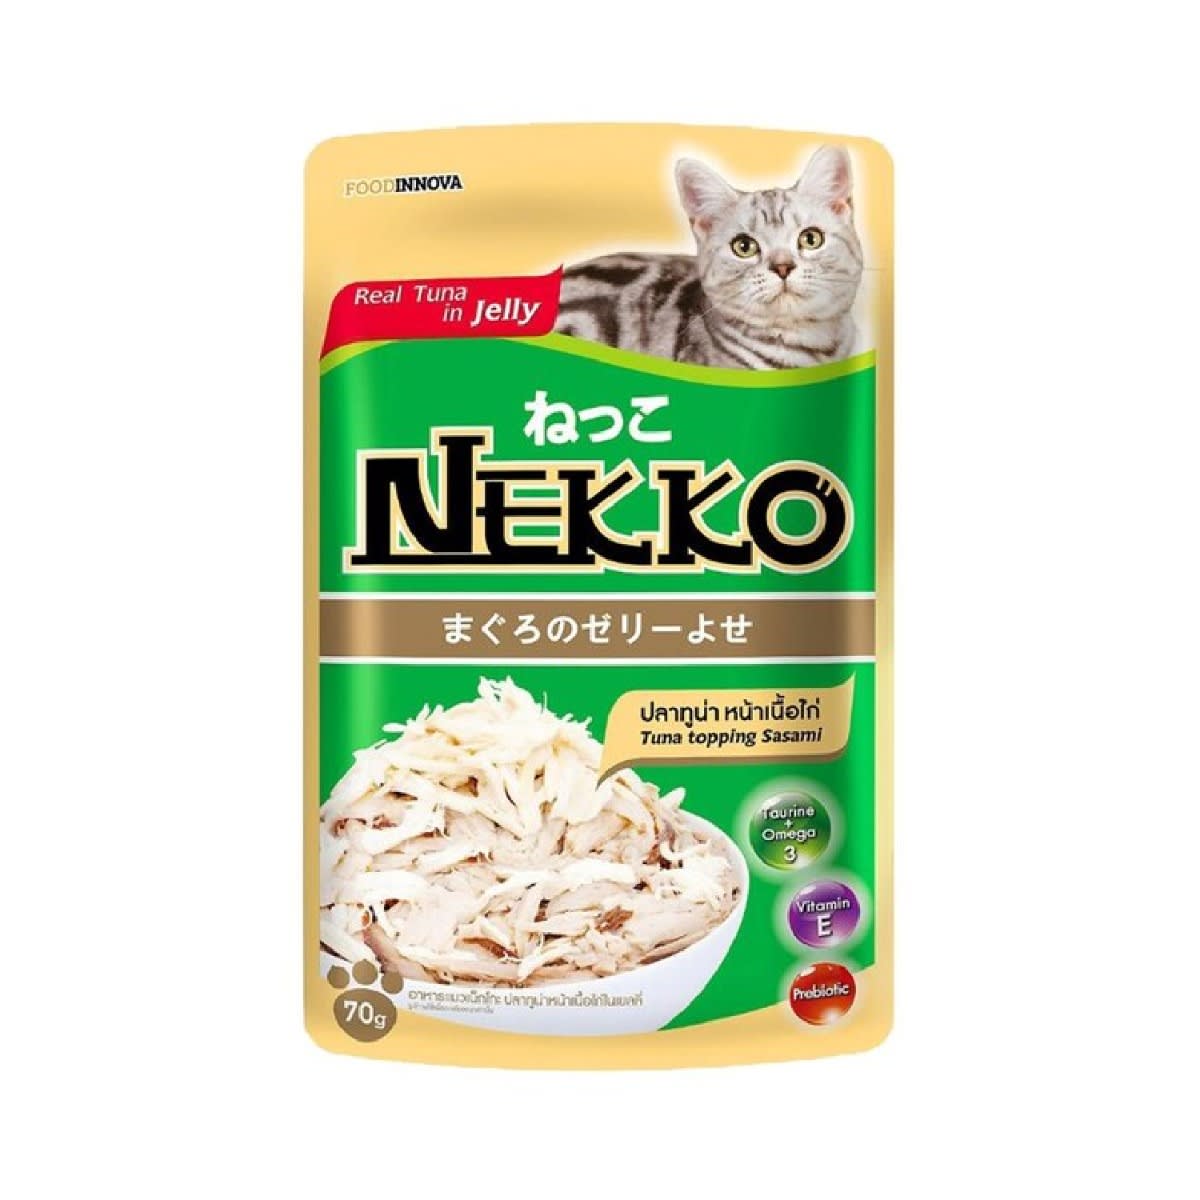 Nekko เน็กโกะ รสปลาทูน่าในเจลลี่เนื้อไก่ สำหรับแมว 70 g